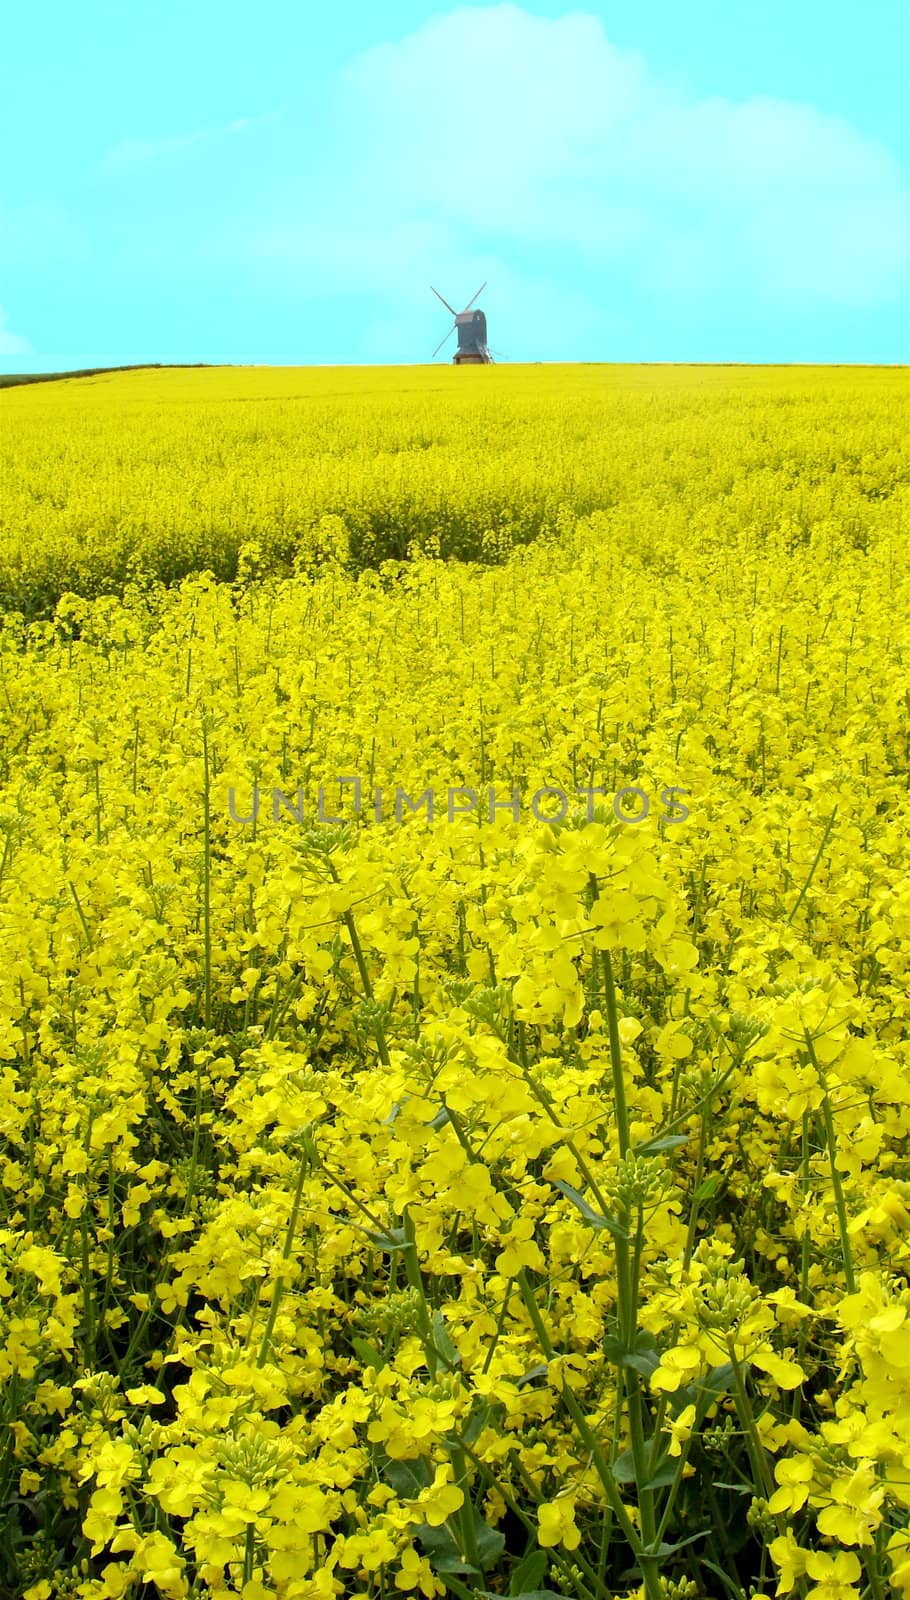 Windmill across a field of yellow flowers